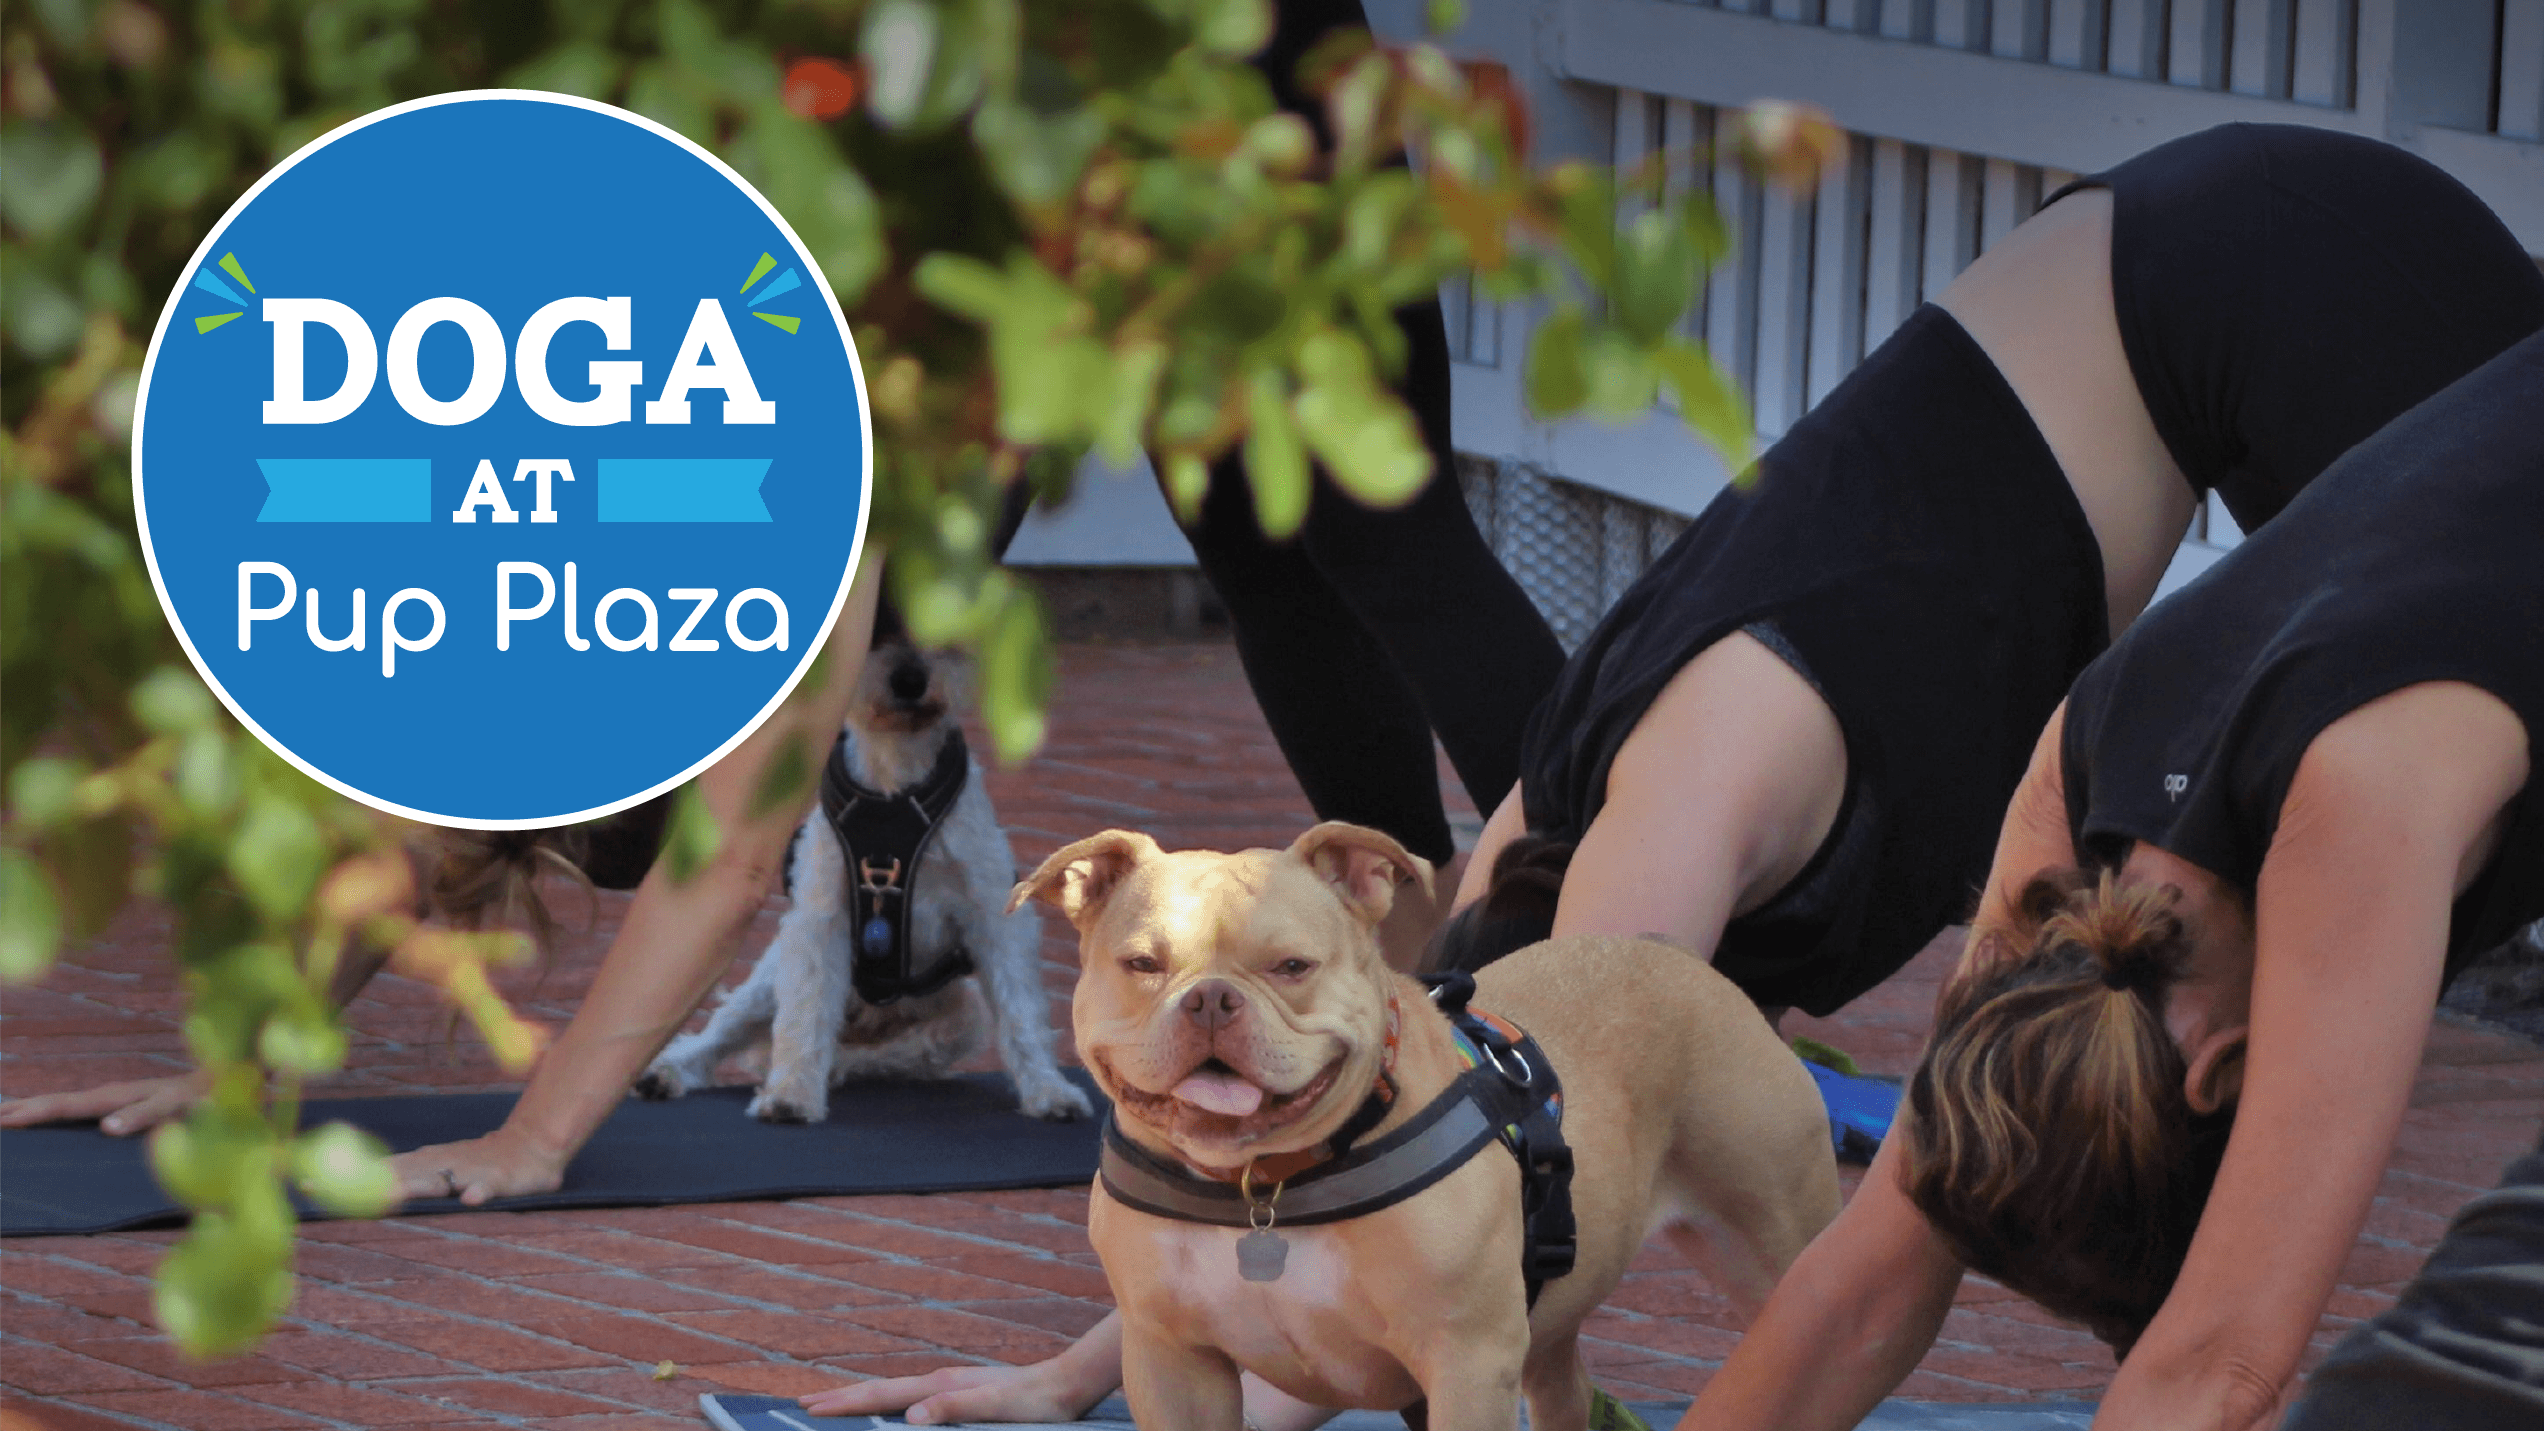 Doga at Pup Plaza